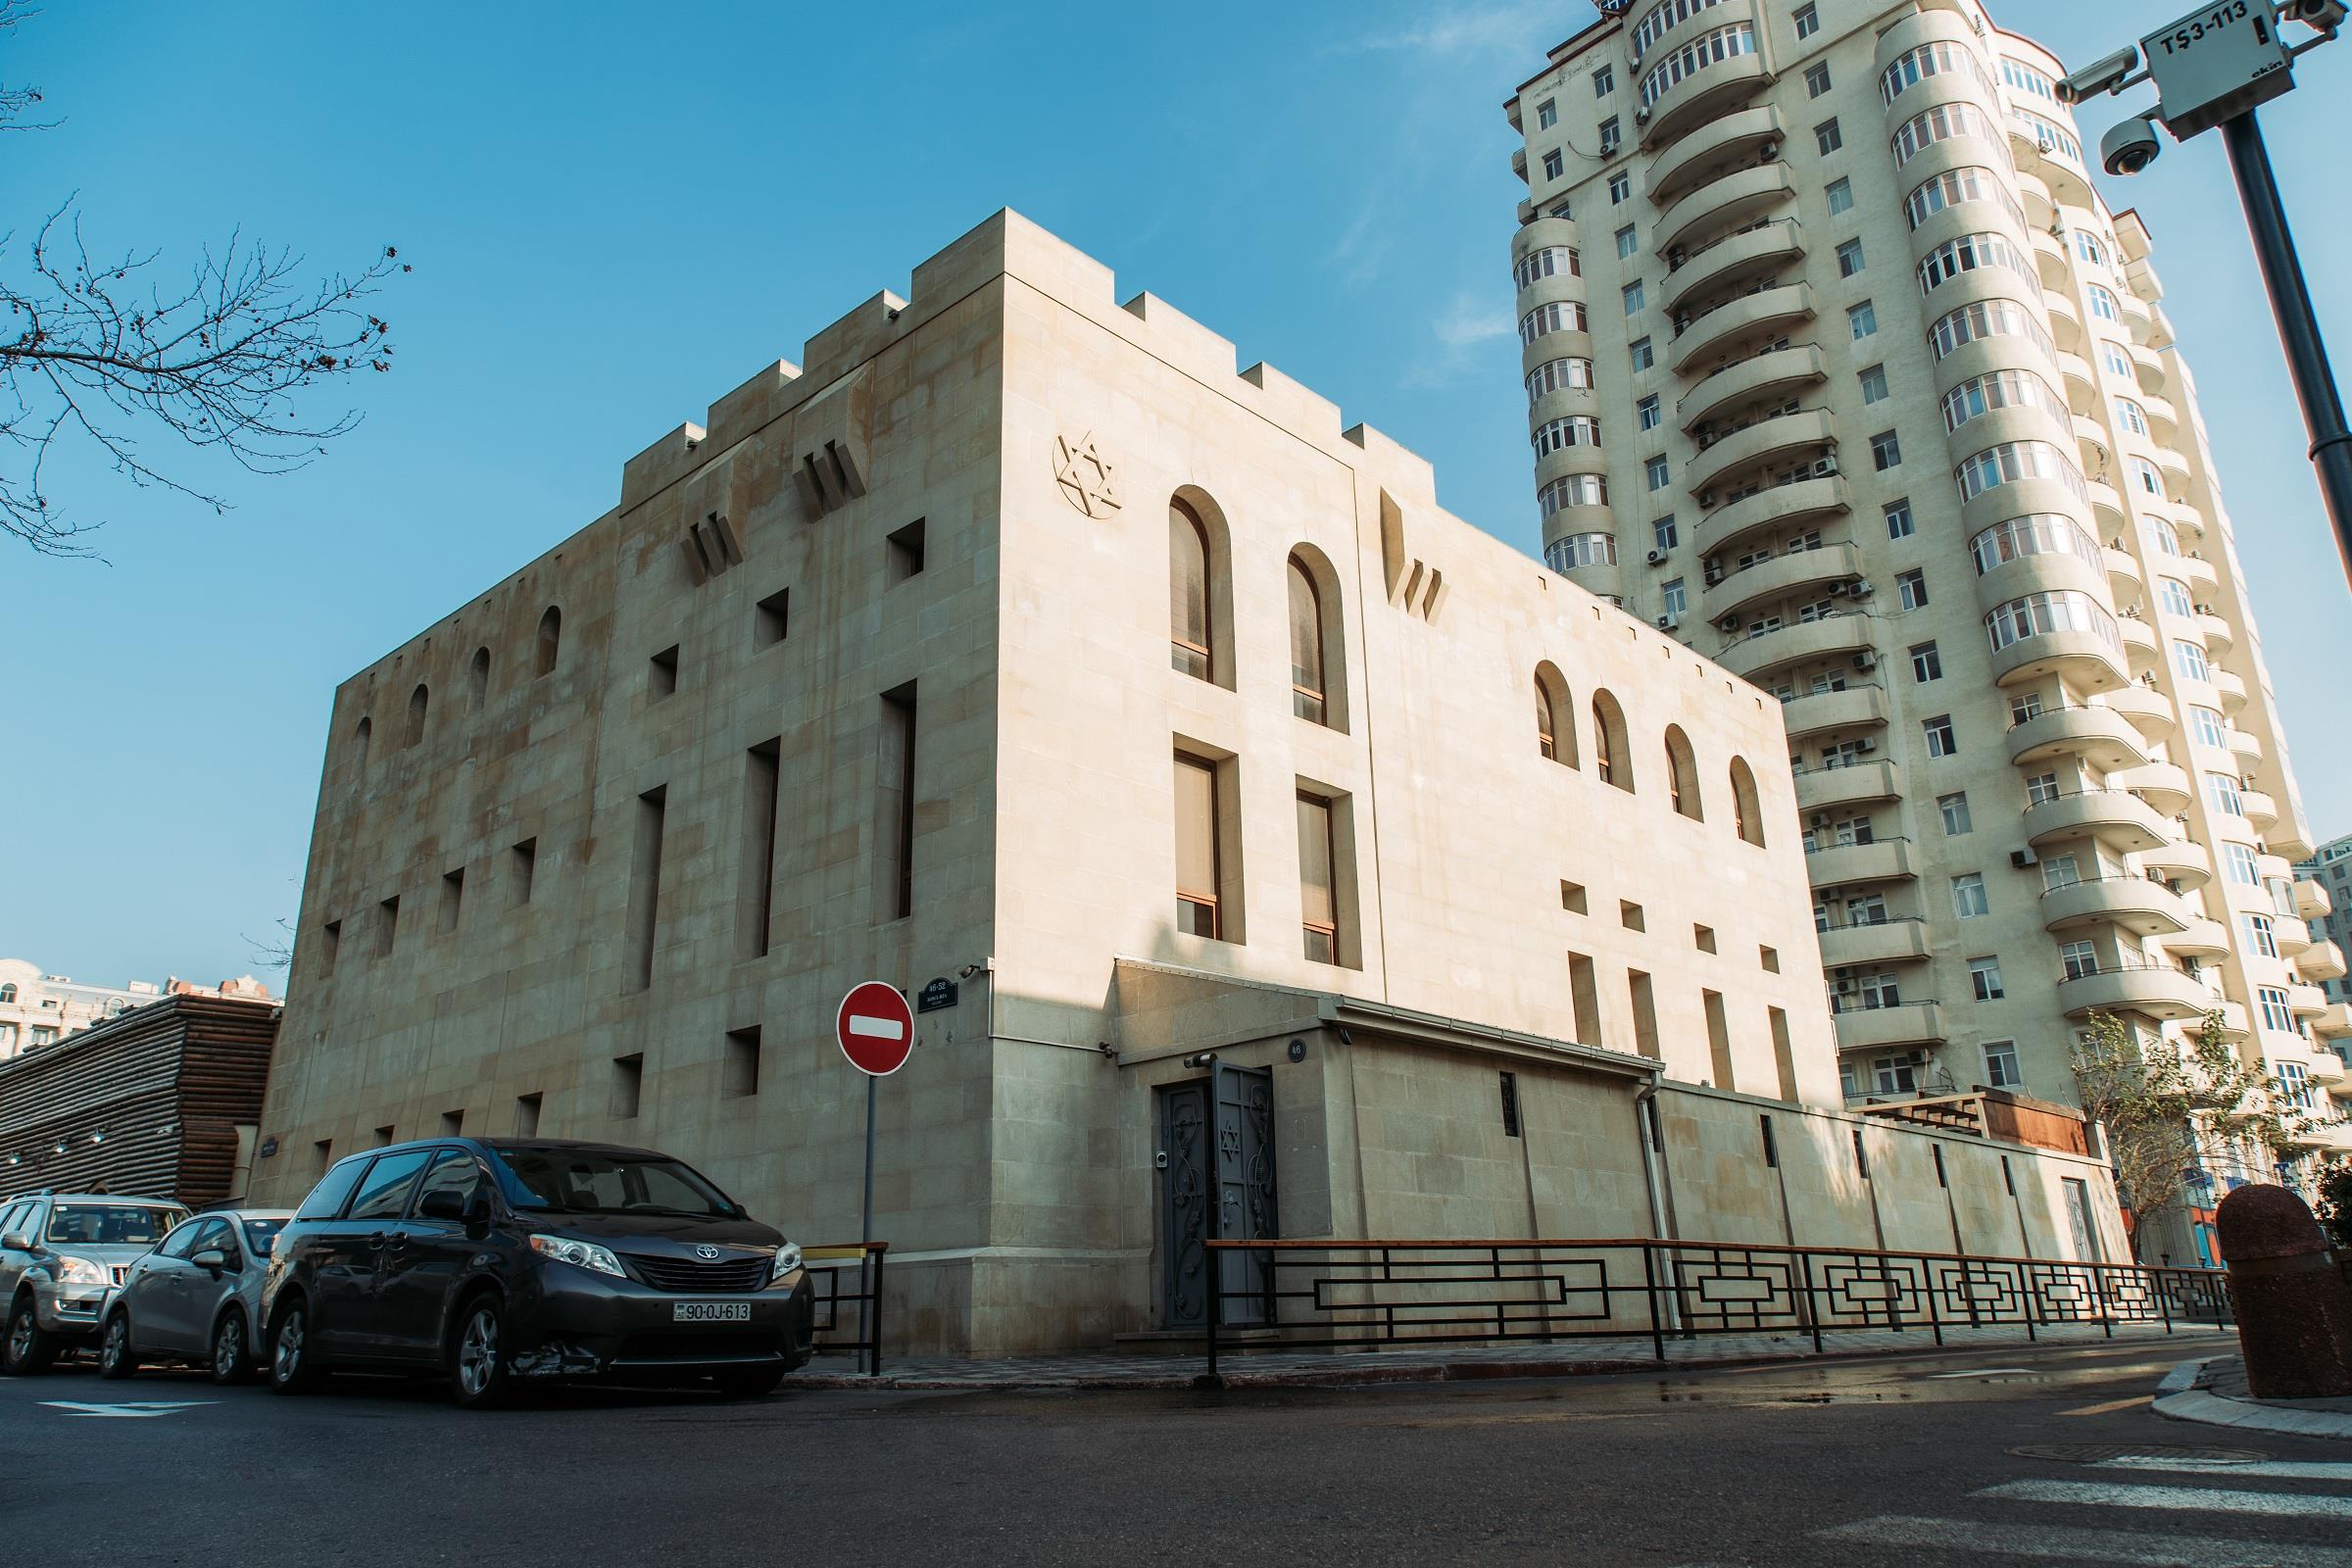 The Jewish Legacy in Baku